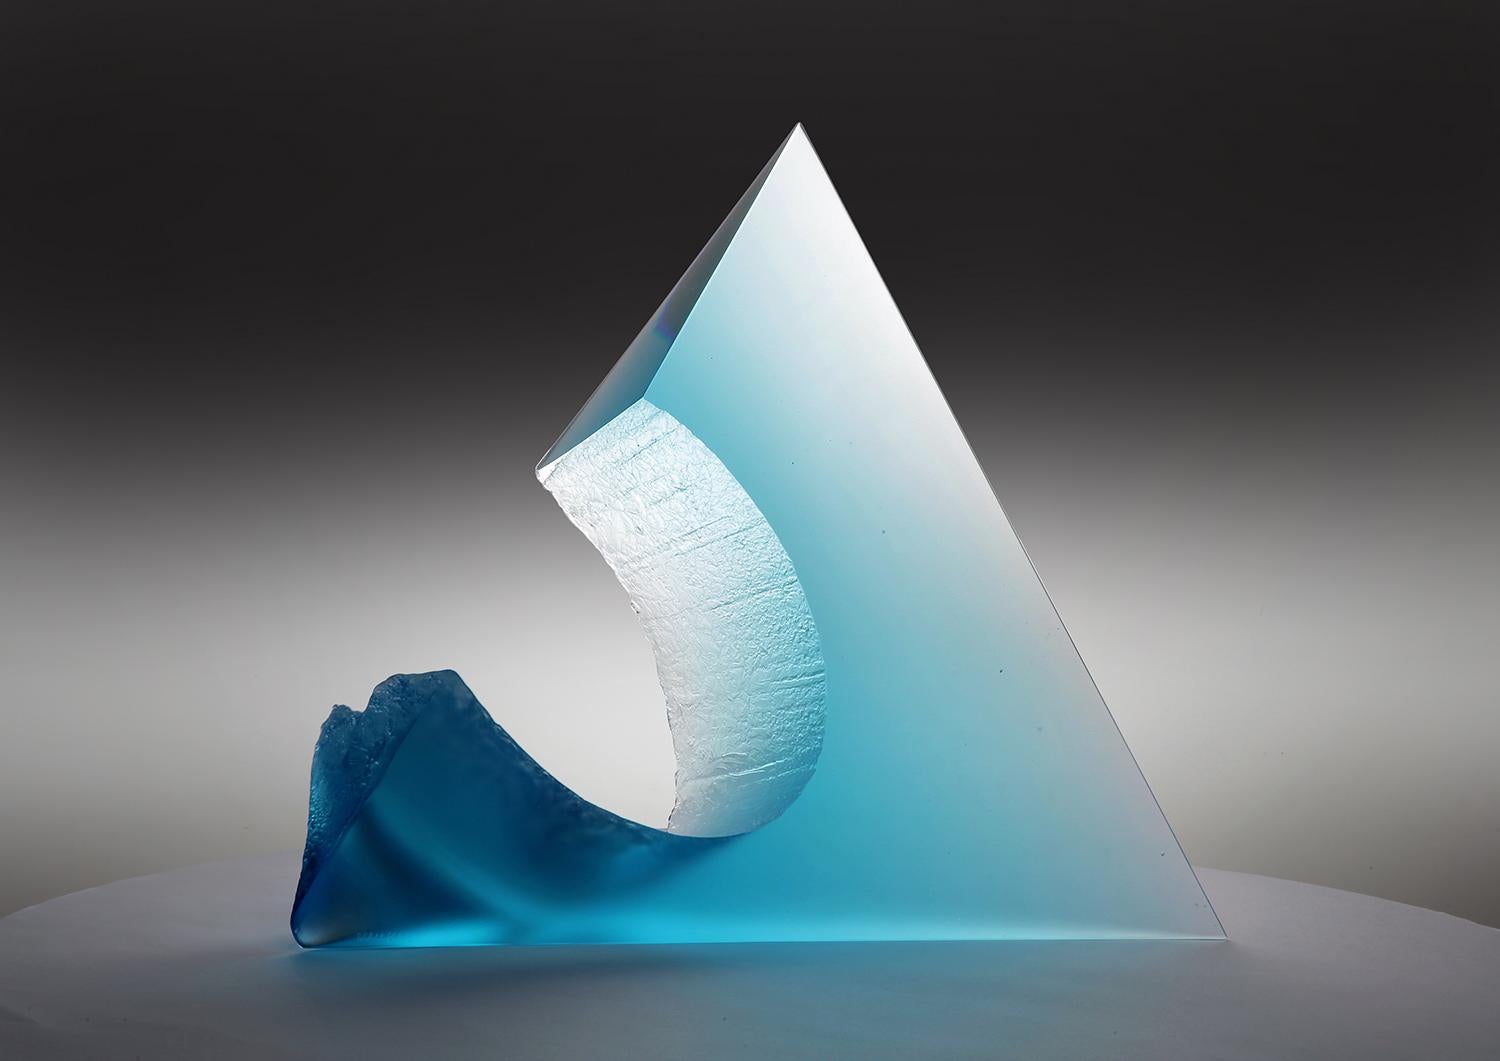 Josef Marek Abstract Sculpture - "Eye of the Mountain" cast glass sculpture